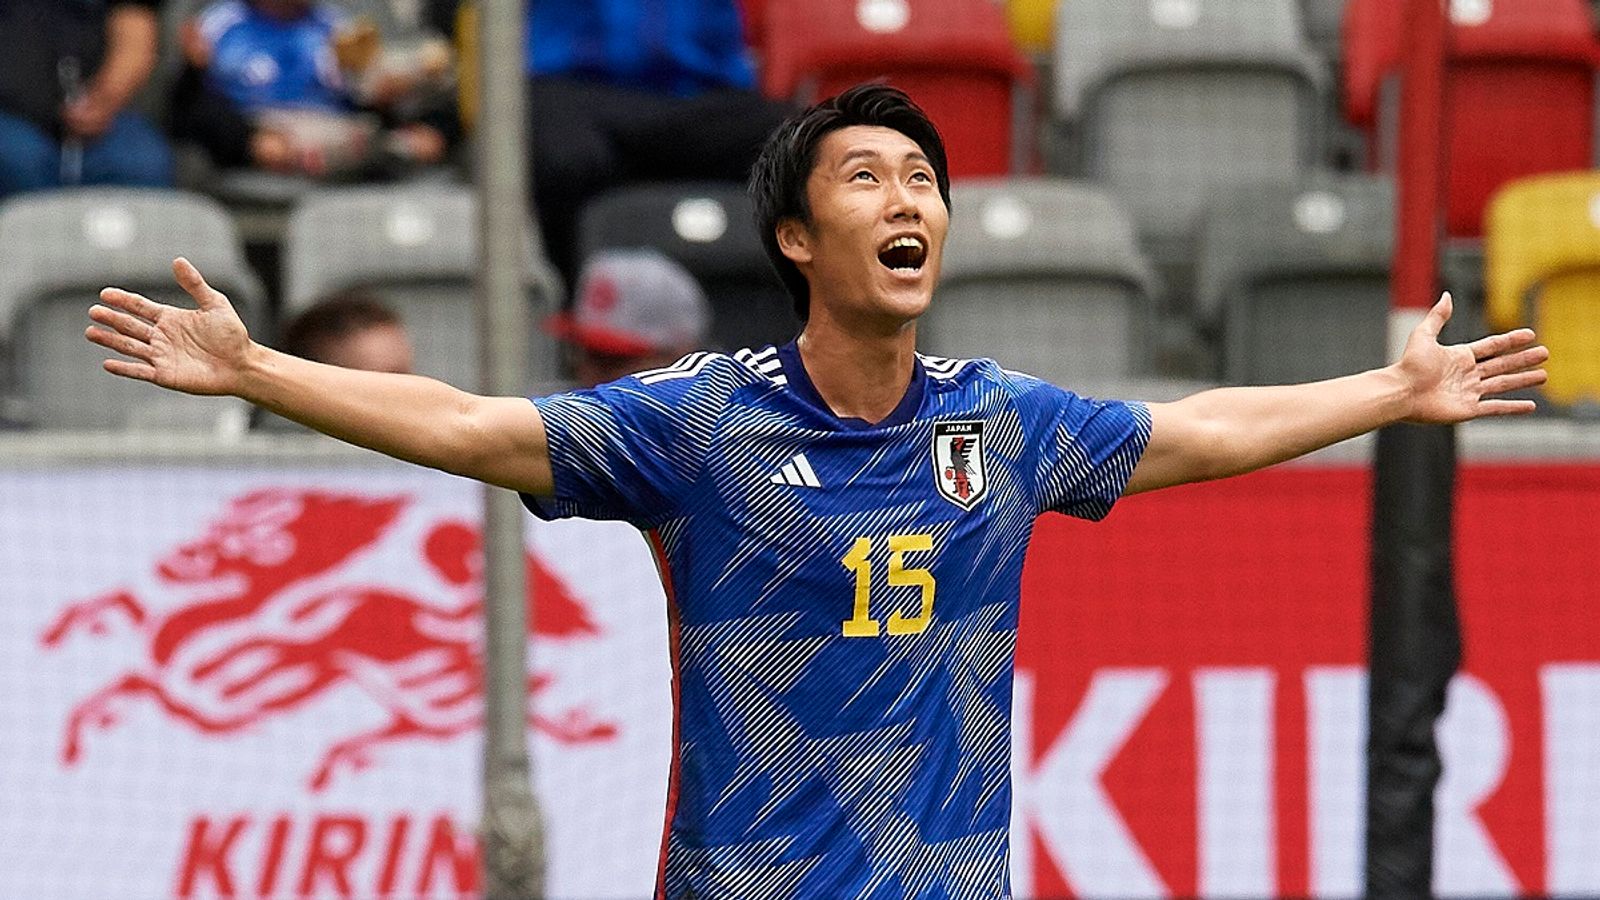 サッカー: 日本がデュッセルドルフでアメリカとのテストマッチに勝利 | サッカーニュース